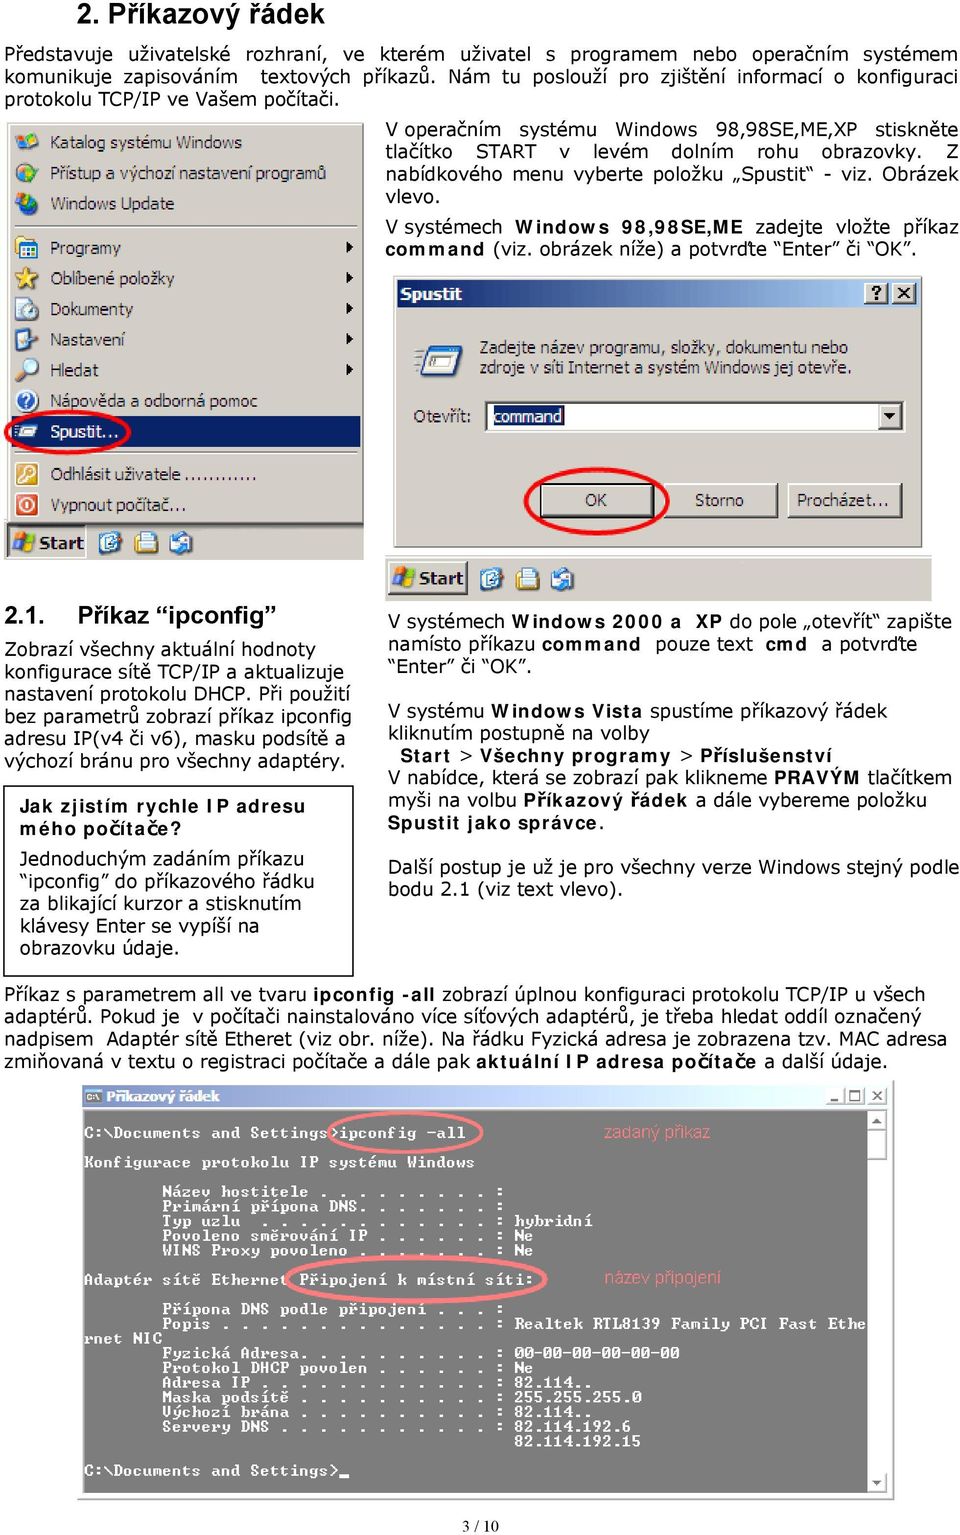 Z nabídkového menu vyberte položku Spustit - viz. Obrázek vlevo. V systémech Windows 98,98SE,ME zadejte vložte příkaz command (viz. obrázek níže) a potvrďte Enter či OK. 2.1.